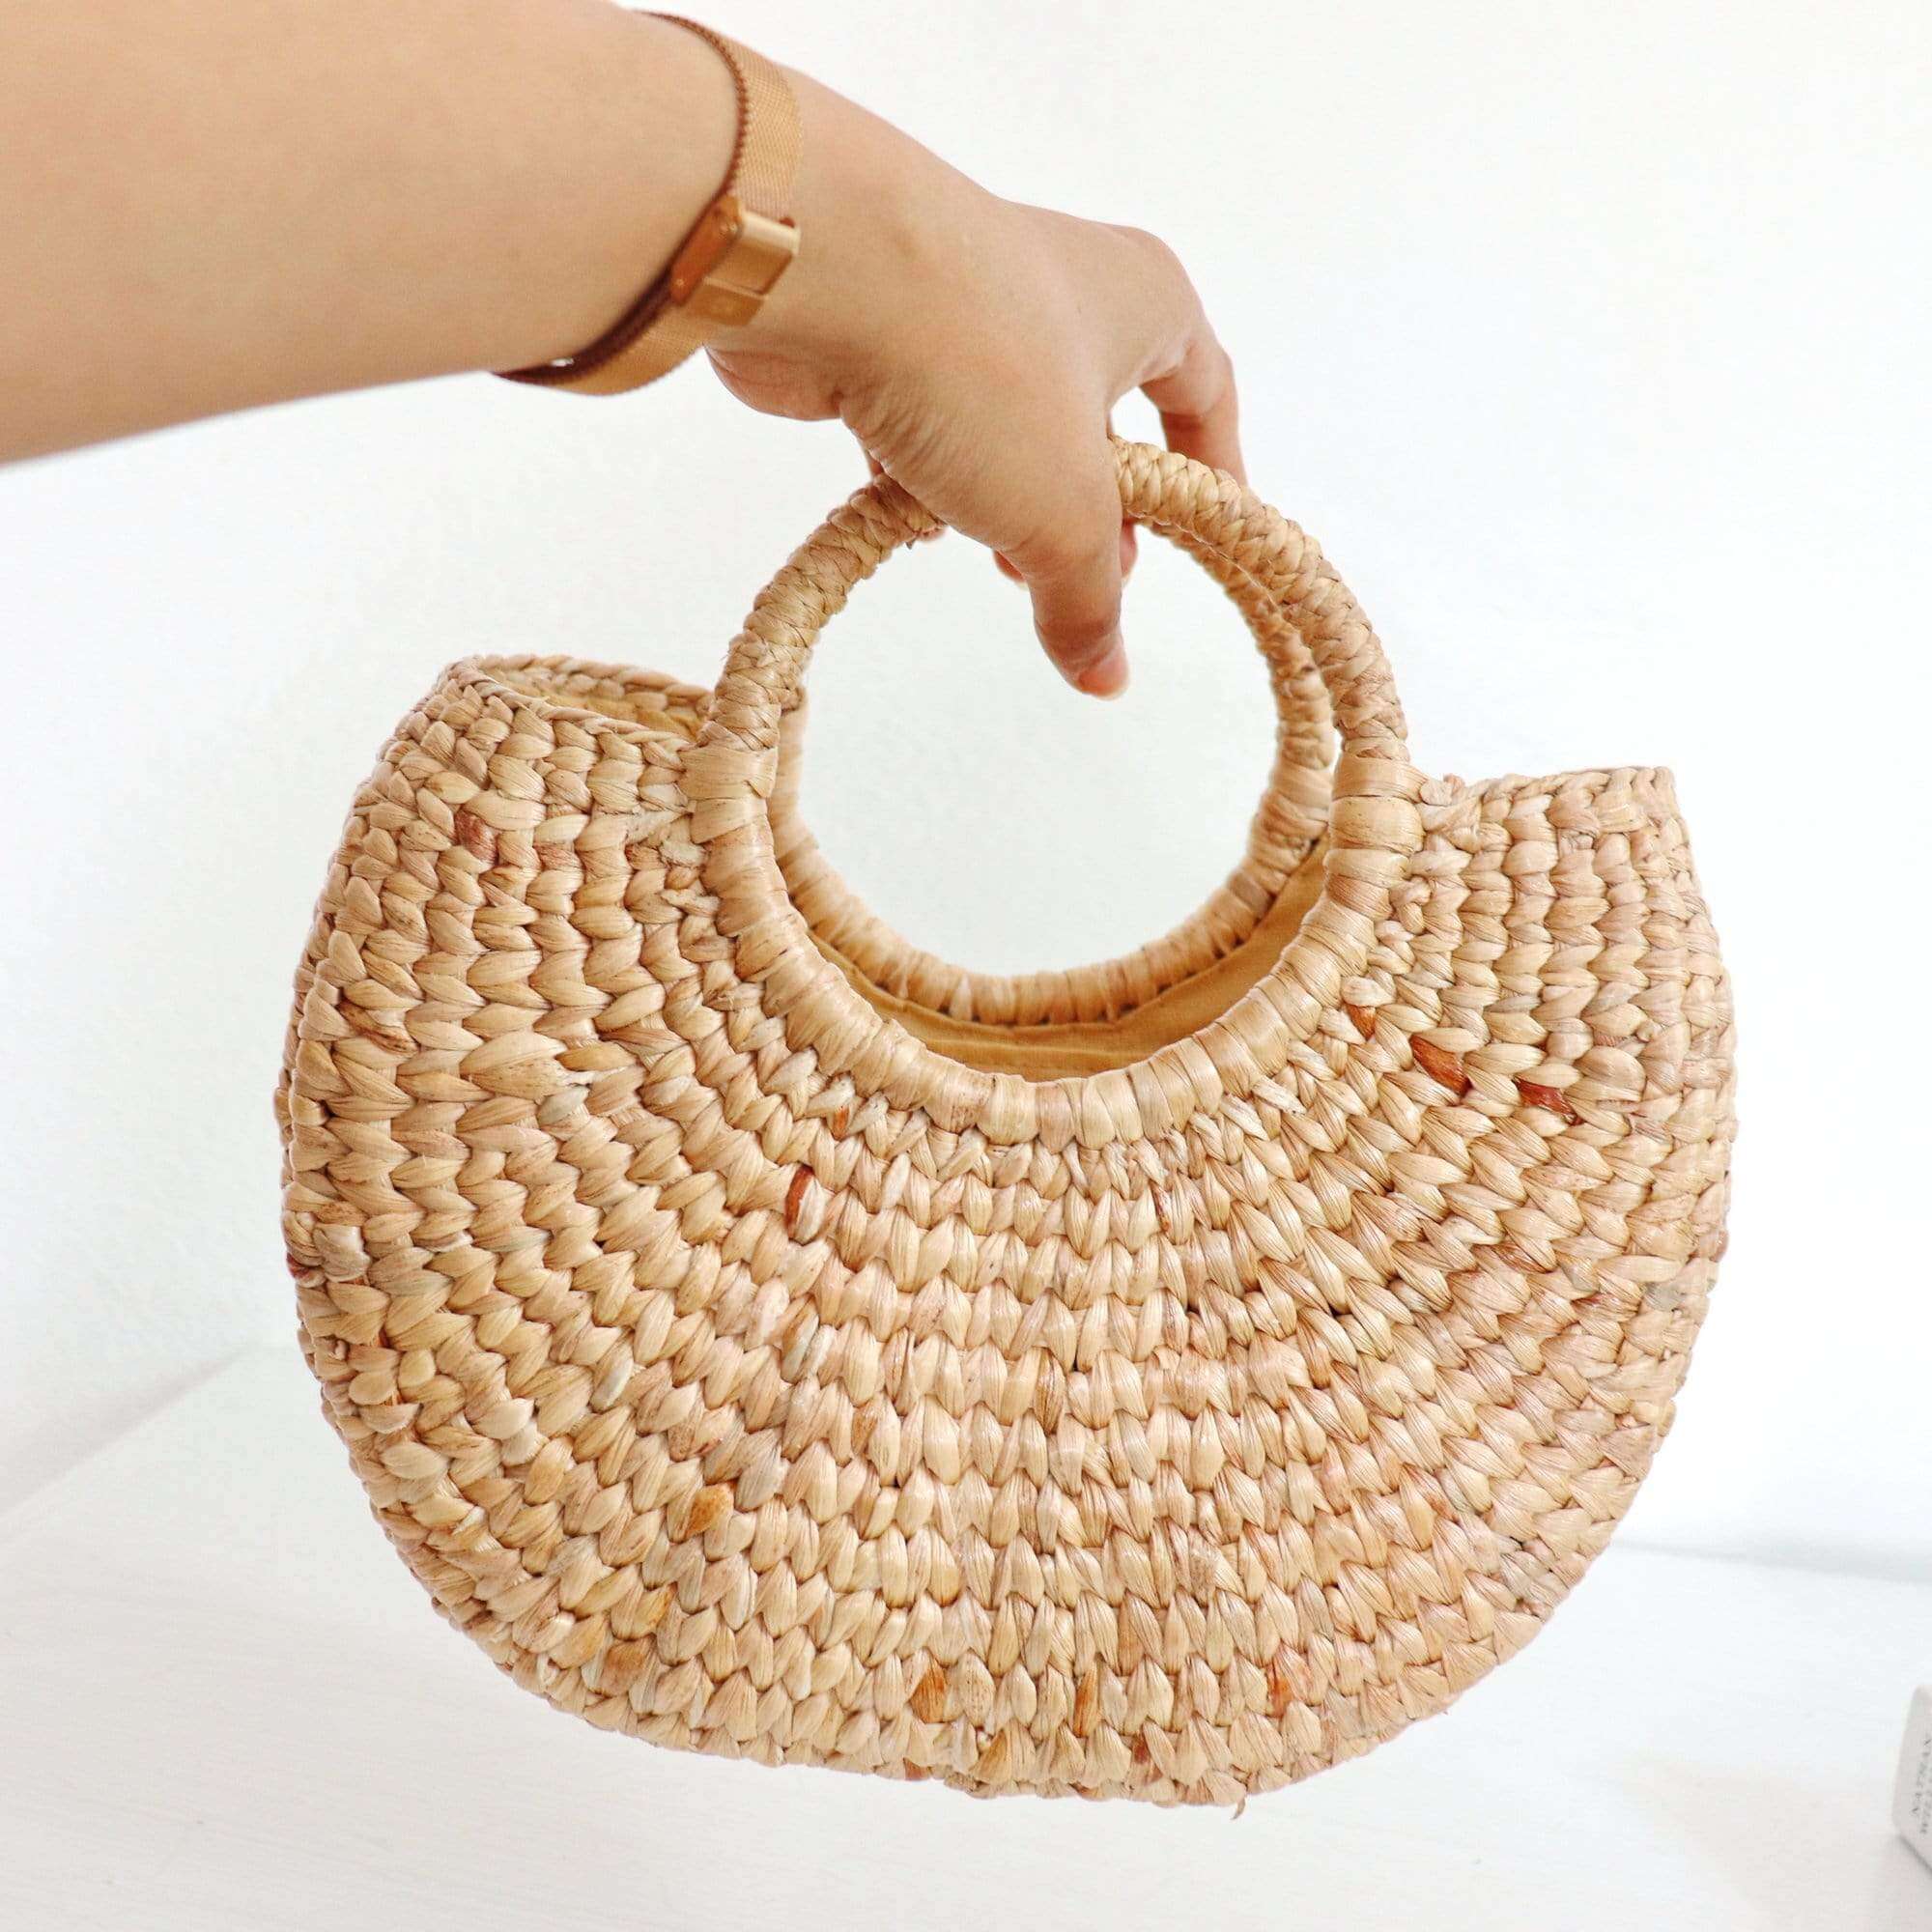 KAWEE - Straw Basket Bag